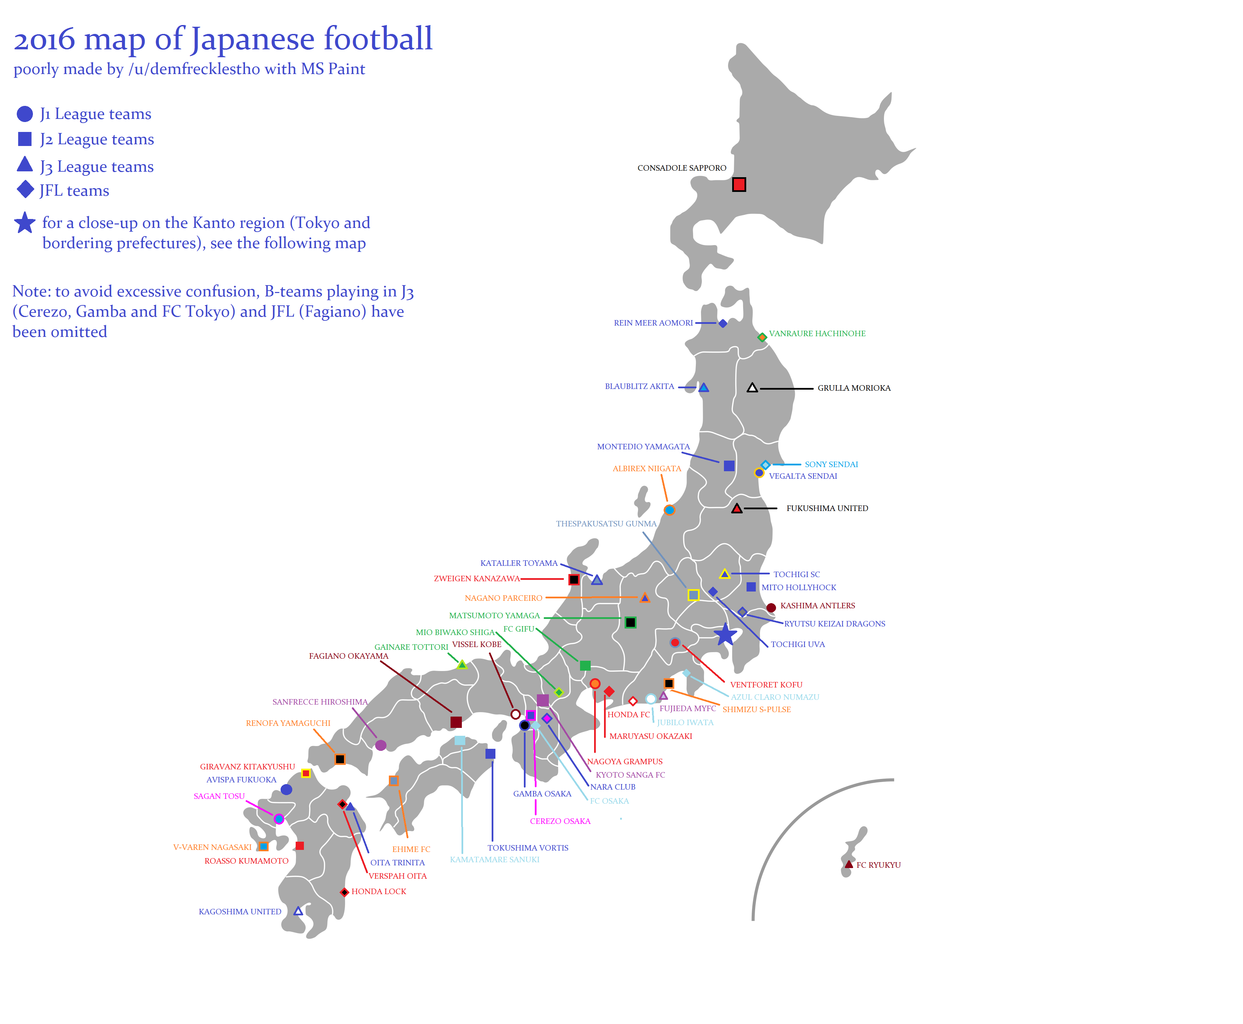 日本のサッカーチームの所在地を示した日本地図 海外の反応 ワールドサッカーファン 海外の反応